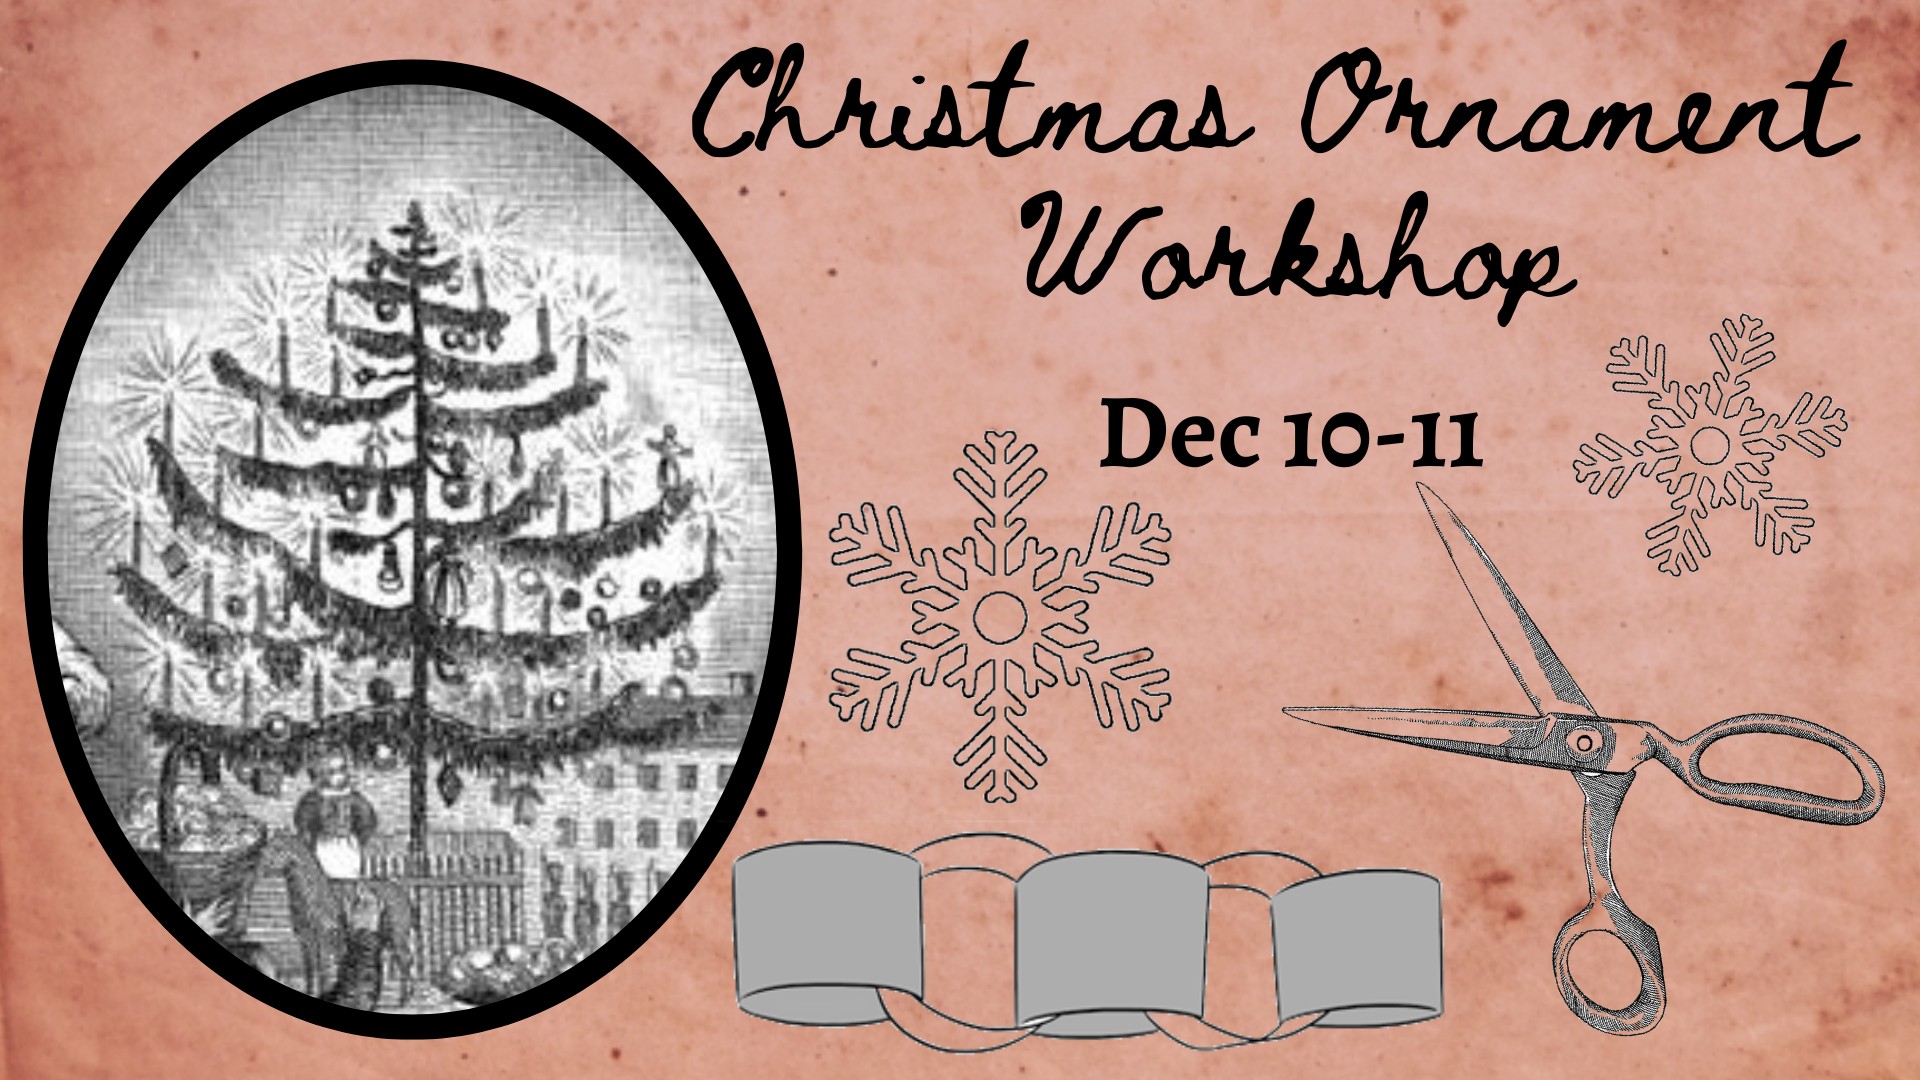 Fanthorp Christmas Ornament Workshop